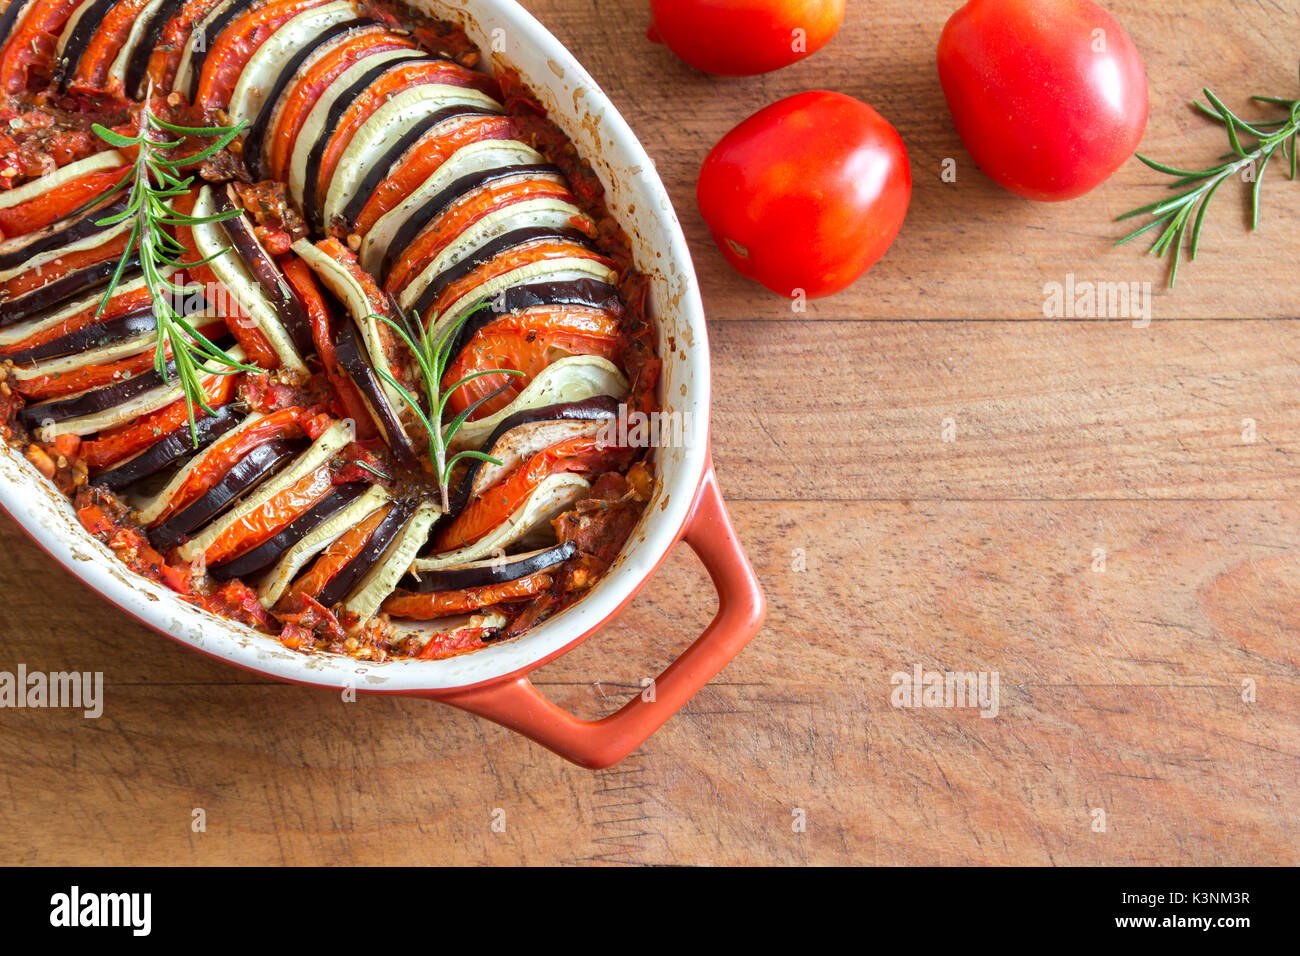 Ratatouille - tradizionale francese provenzale piatto di verdure cotte nel forno. La dieta vegetariana cibo vegan - Ratatouille casseruola. Foto Stock